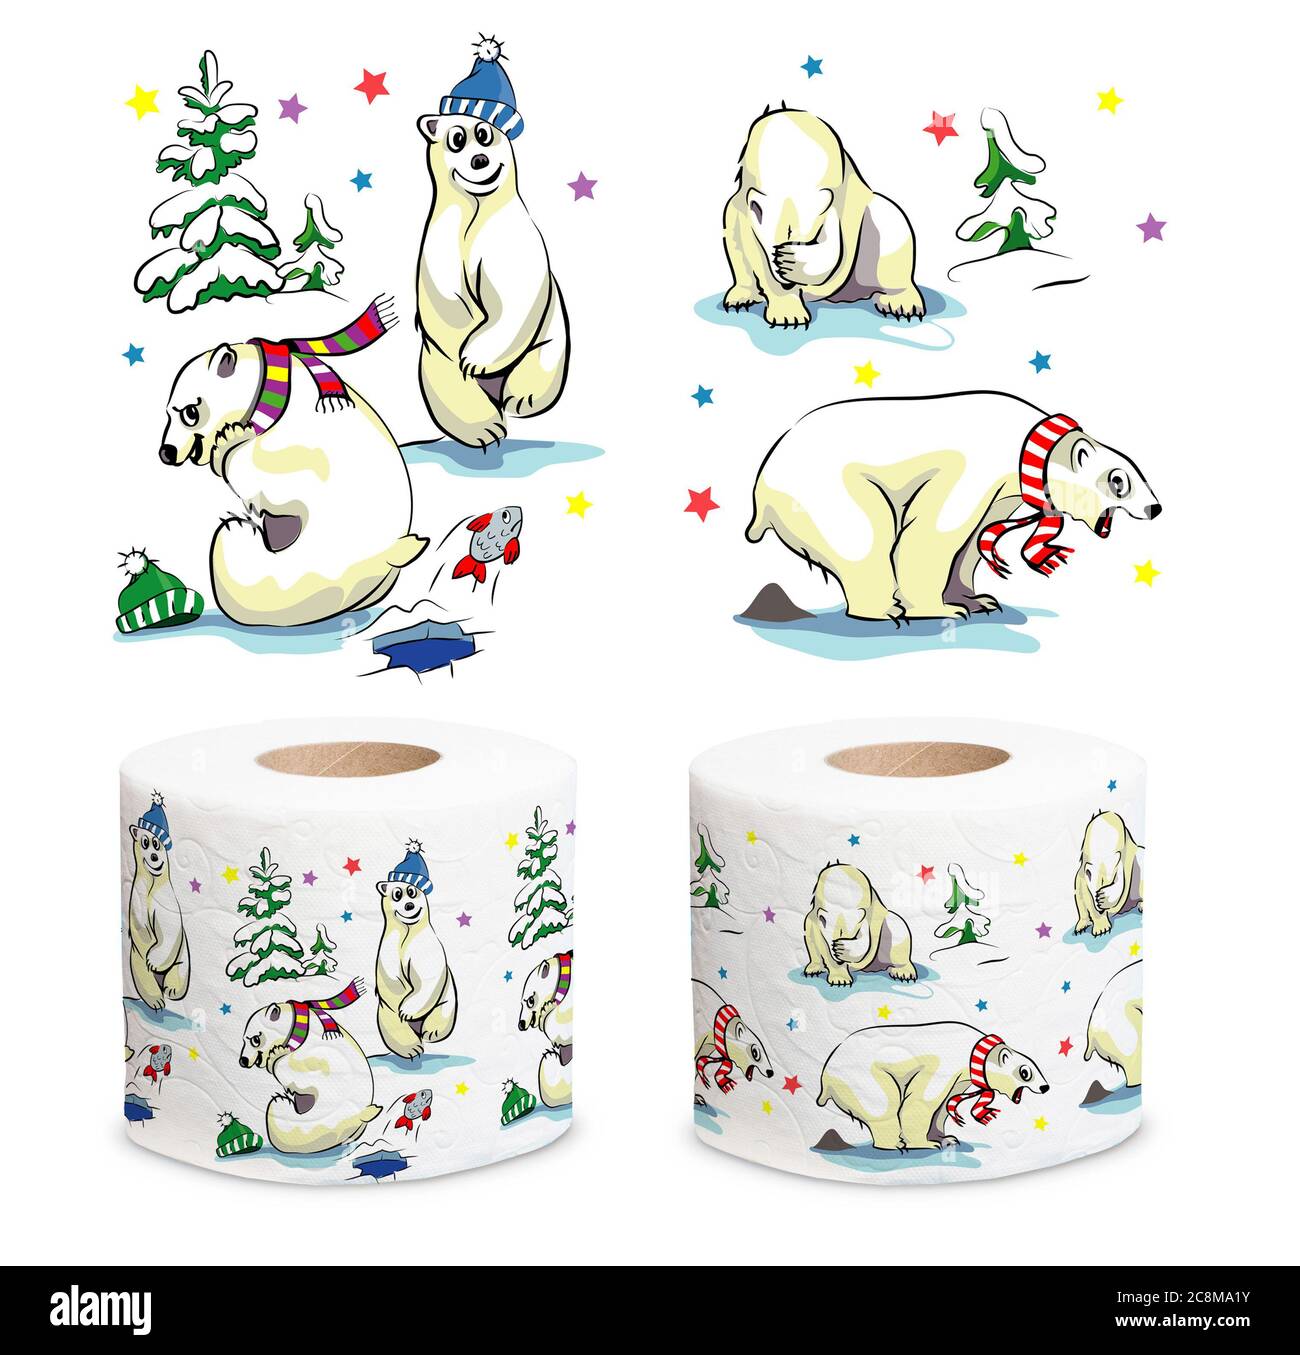 L'ours blanc polaire se trouve près de l'arbre de Noël, illustration Banque D'Images